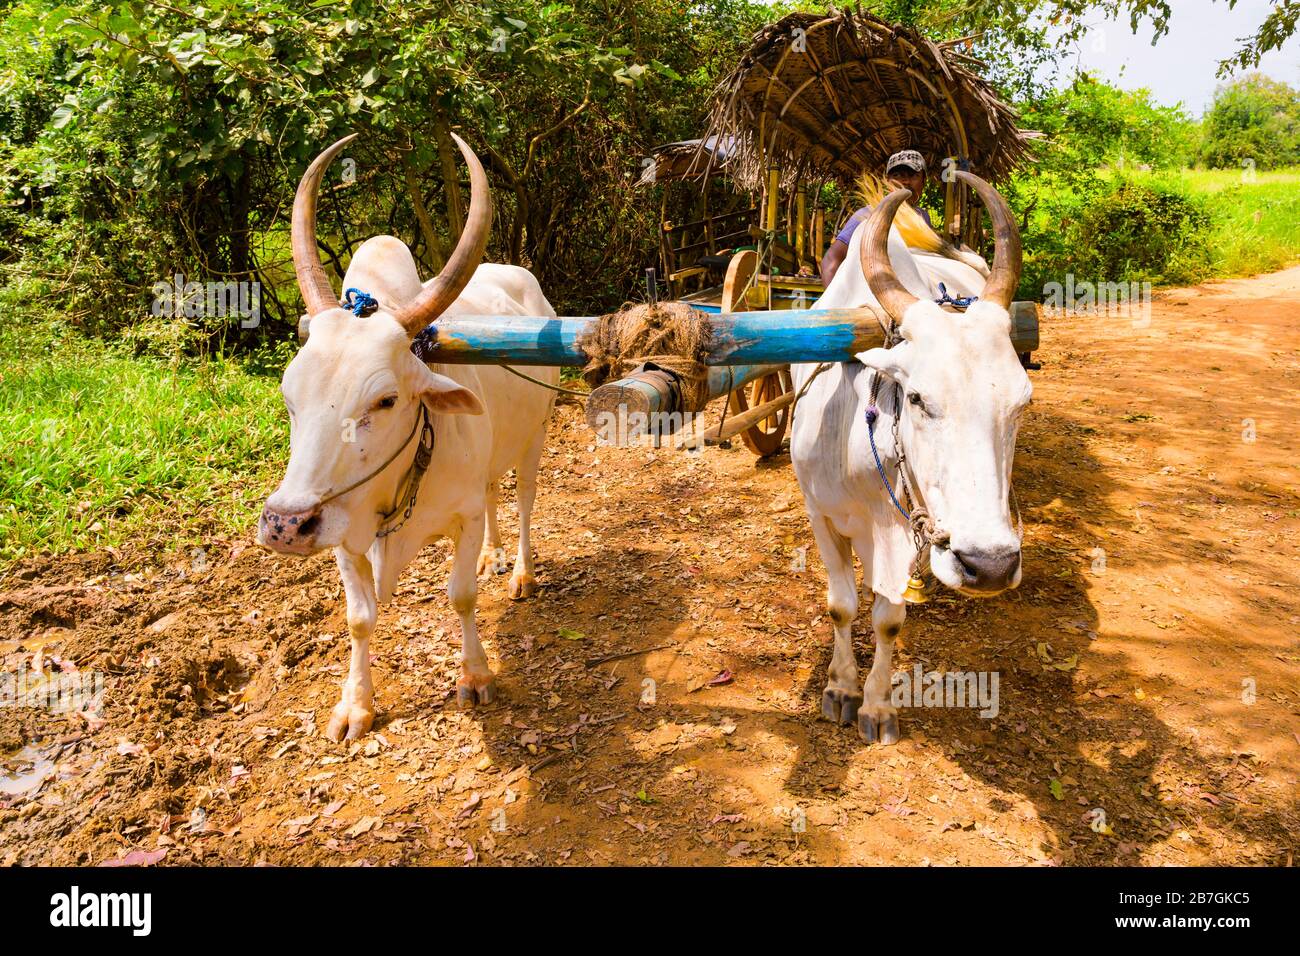 Südasien Sri Lanka Sigiriya Ceylon traditionelle Karre weiße Bullen Bullen Oxen lange Hörner Holzräder Seil Zügel Bäume rote Erde Feld Stockfoto